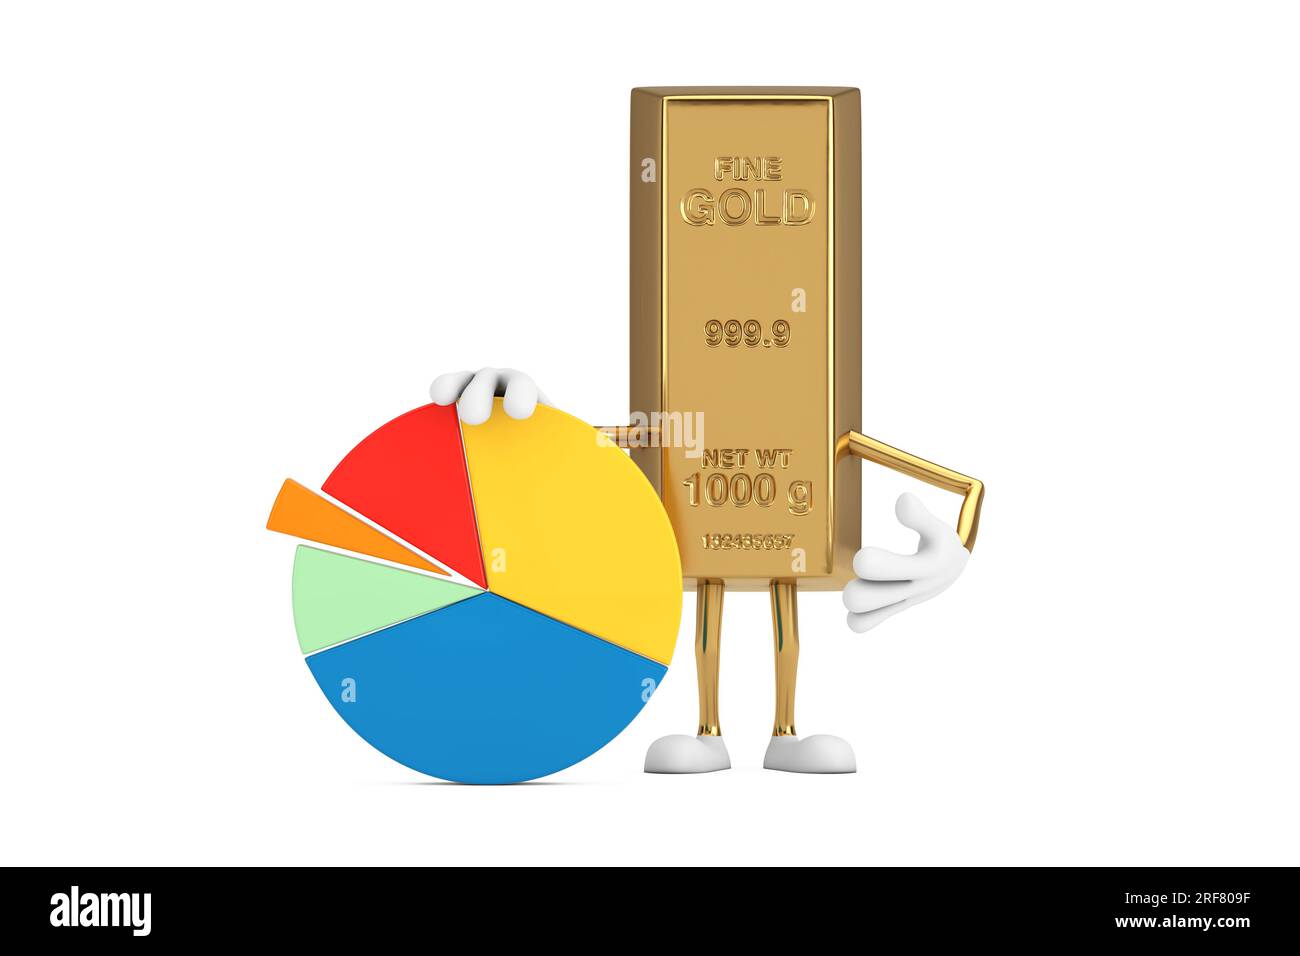 Golden Bar Cartoon Person personnage Mascot avec Info Graphics Business Pie Chart sur un fond blanc. Rendu 3D. Banque D'Images